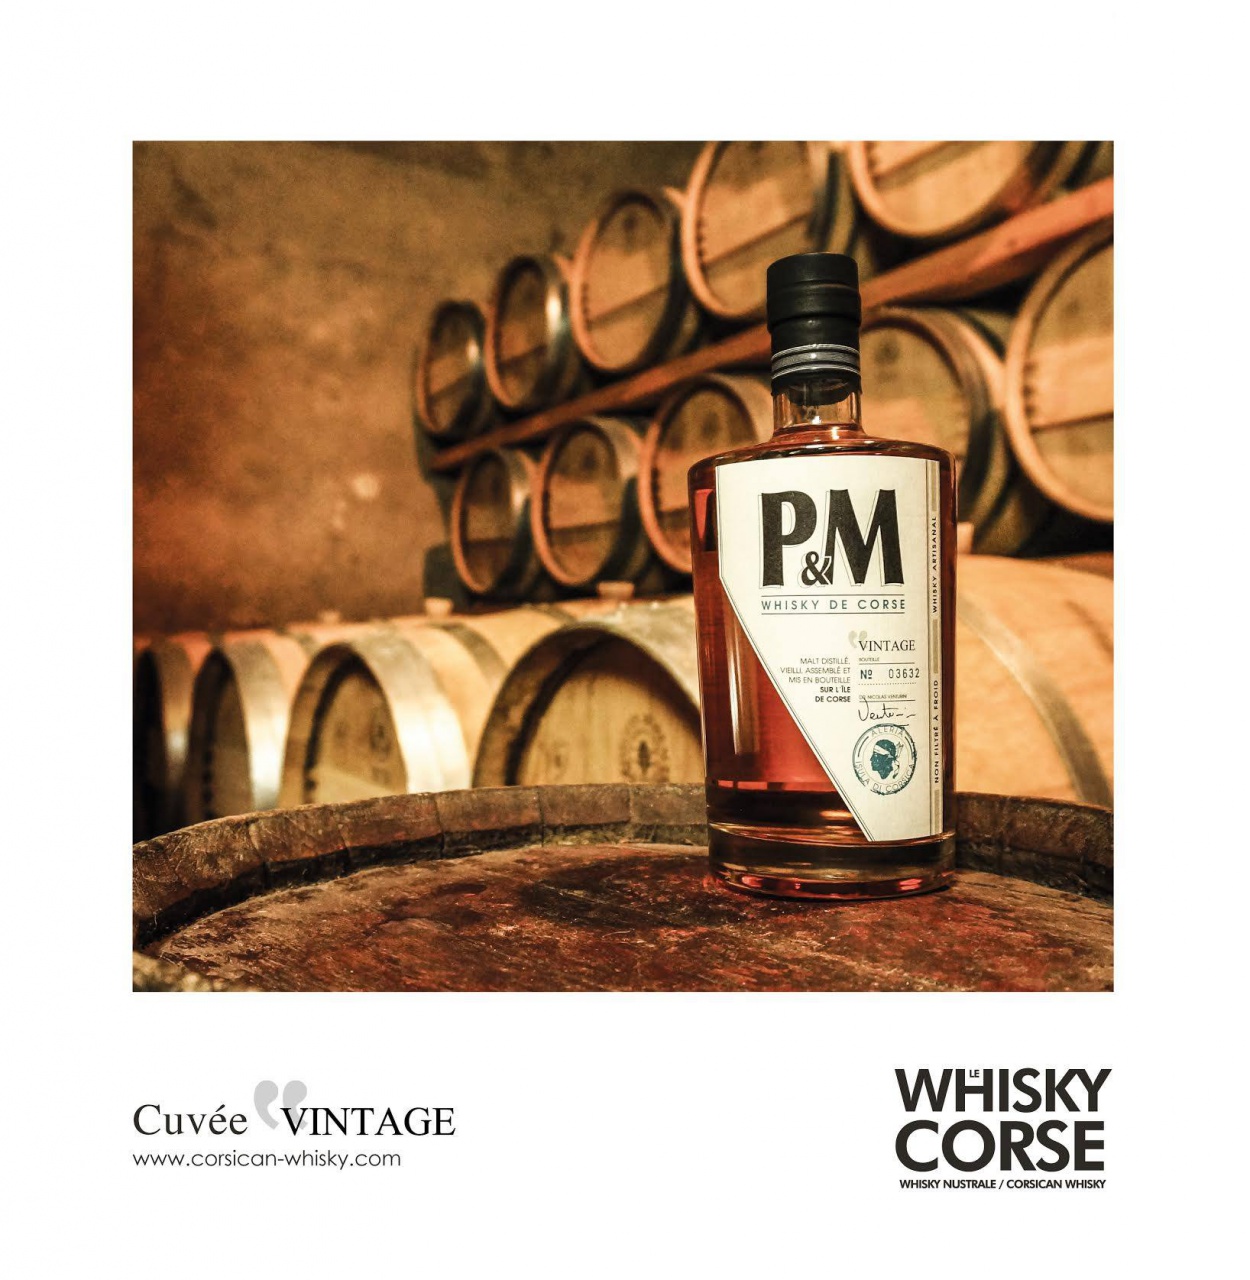 Wkisky Corse P&M cuvée vintage